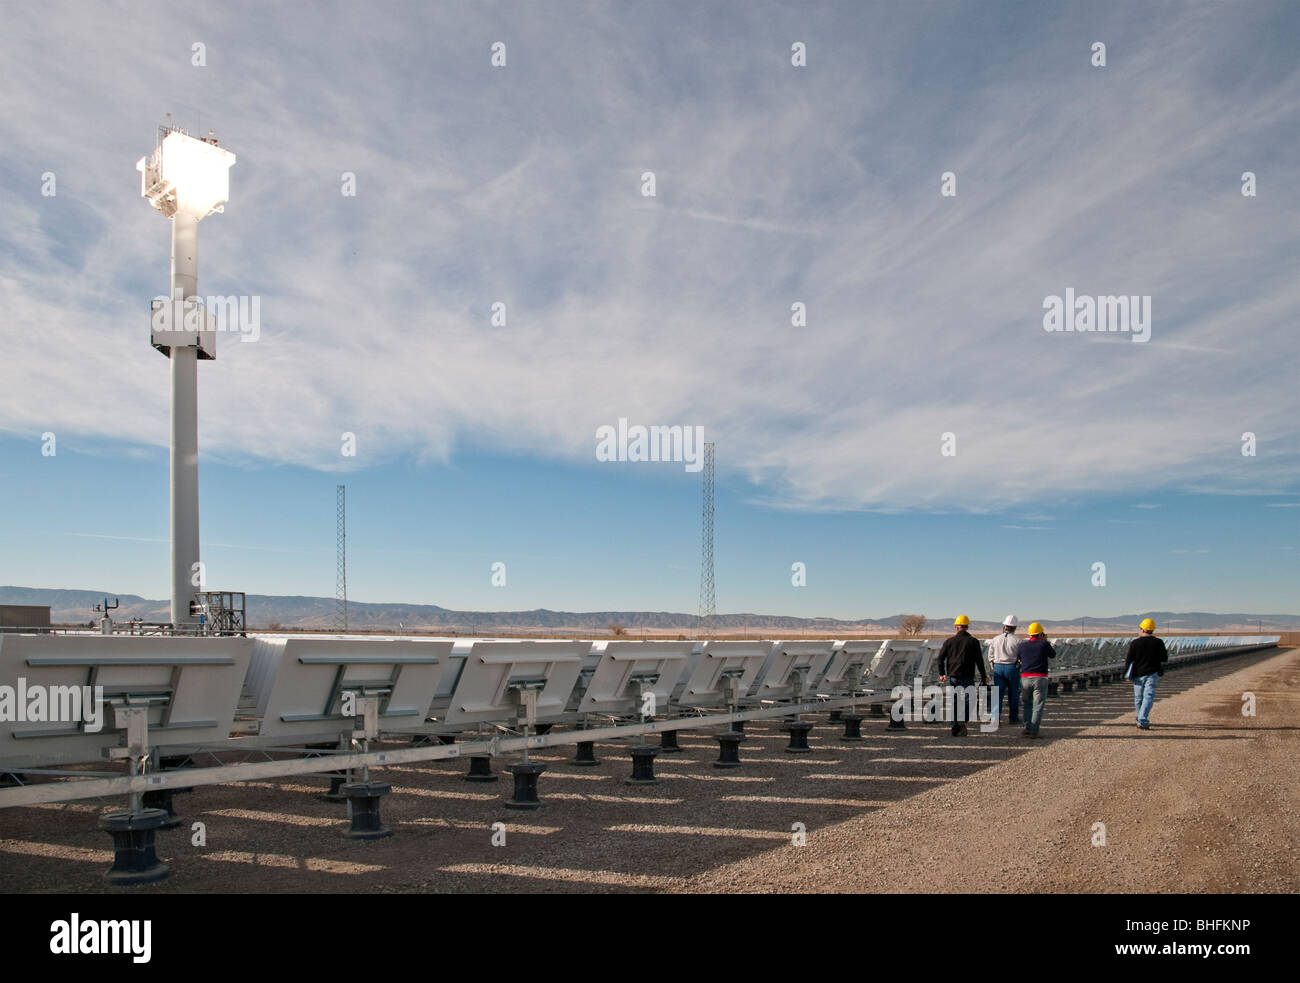 Solare termico impianto di alimentazione con specchi heliostat e torre nella California del Sud Foto Stock